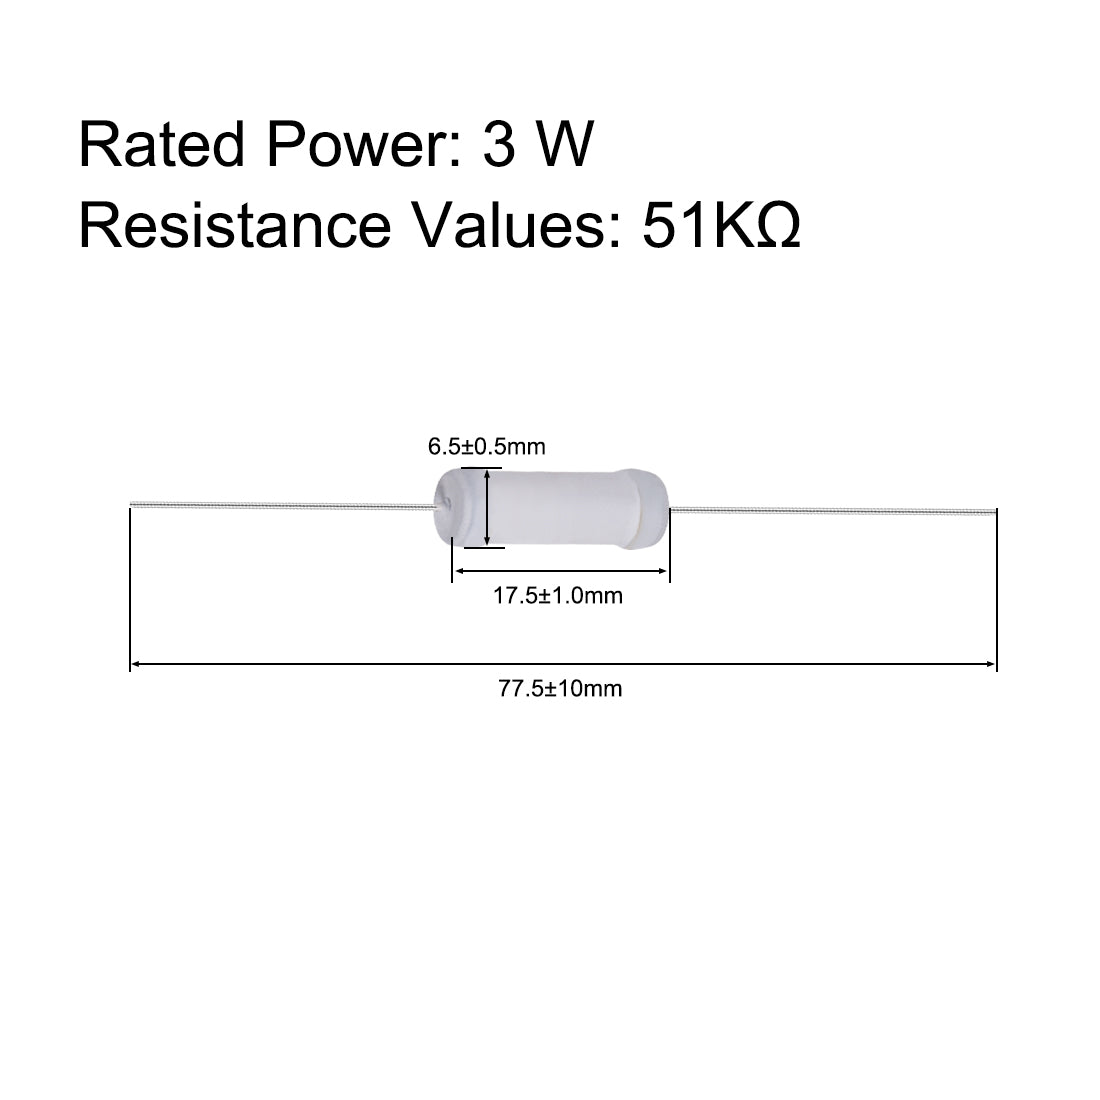 uxcell Uxcell 20pcs 3W 3 Watt Metal Oxide Film Resistor Lead 51K Ohm ±5% Tolerance